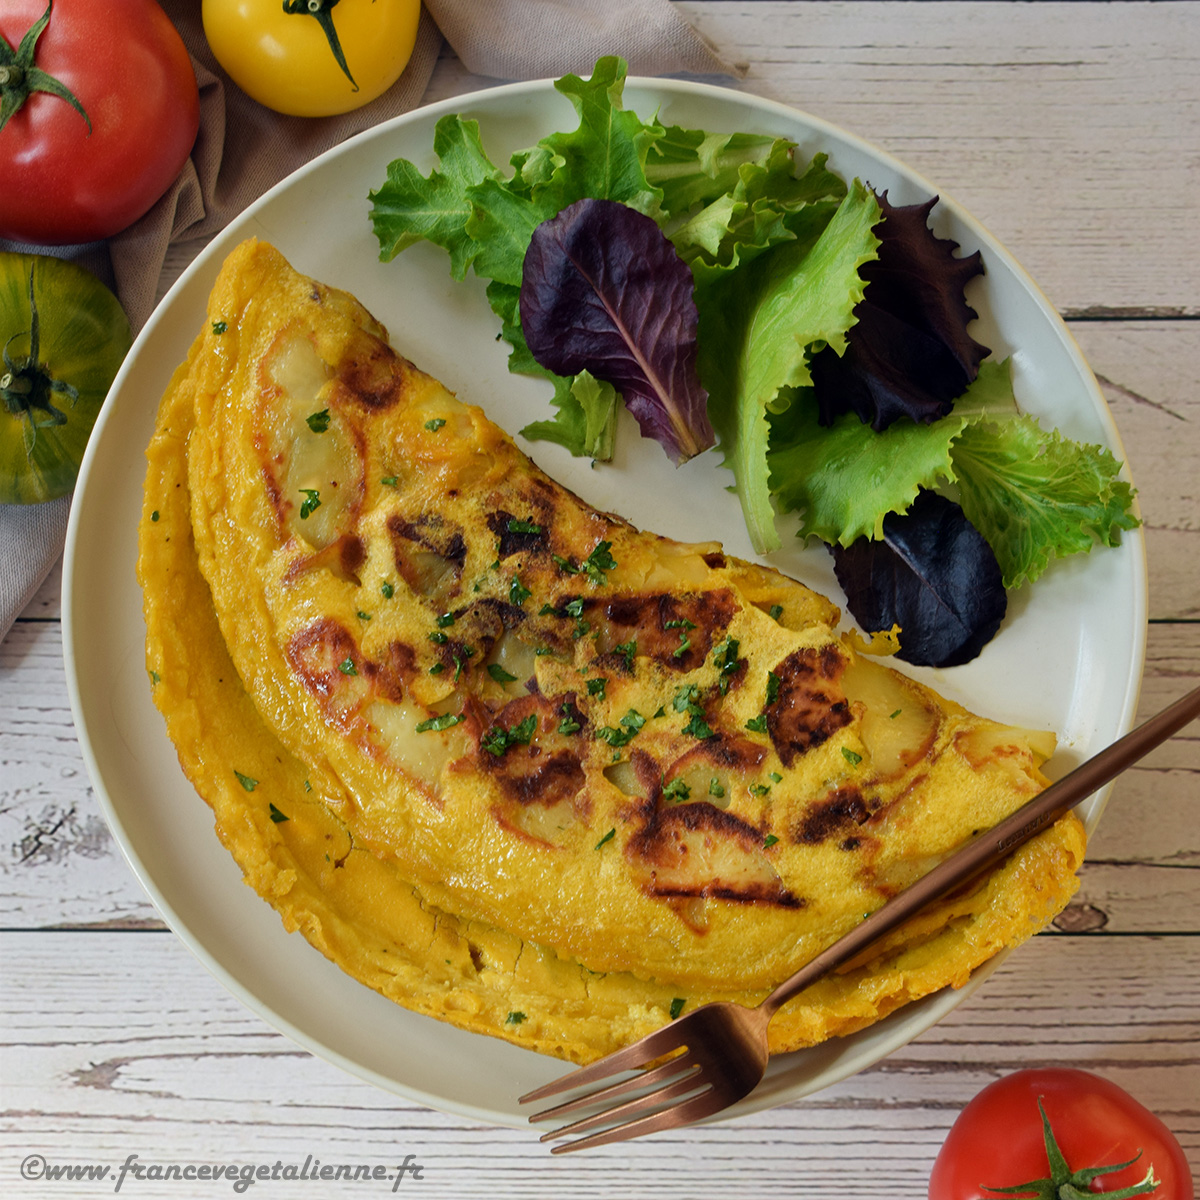 Une omelette végétale aux pommes de terre 'simplifiée' (sans tofu soyeux), mais toujours aussi délicieuse! Riche en protéines et en féculents, elle fera un repas #vegan complet, surtout si vous l'accompagnez d'une petite salade. Sans gluten. 
francevegetalienne.fr/blog/2023/6/15… #proteines